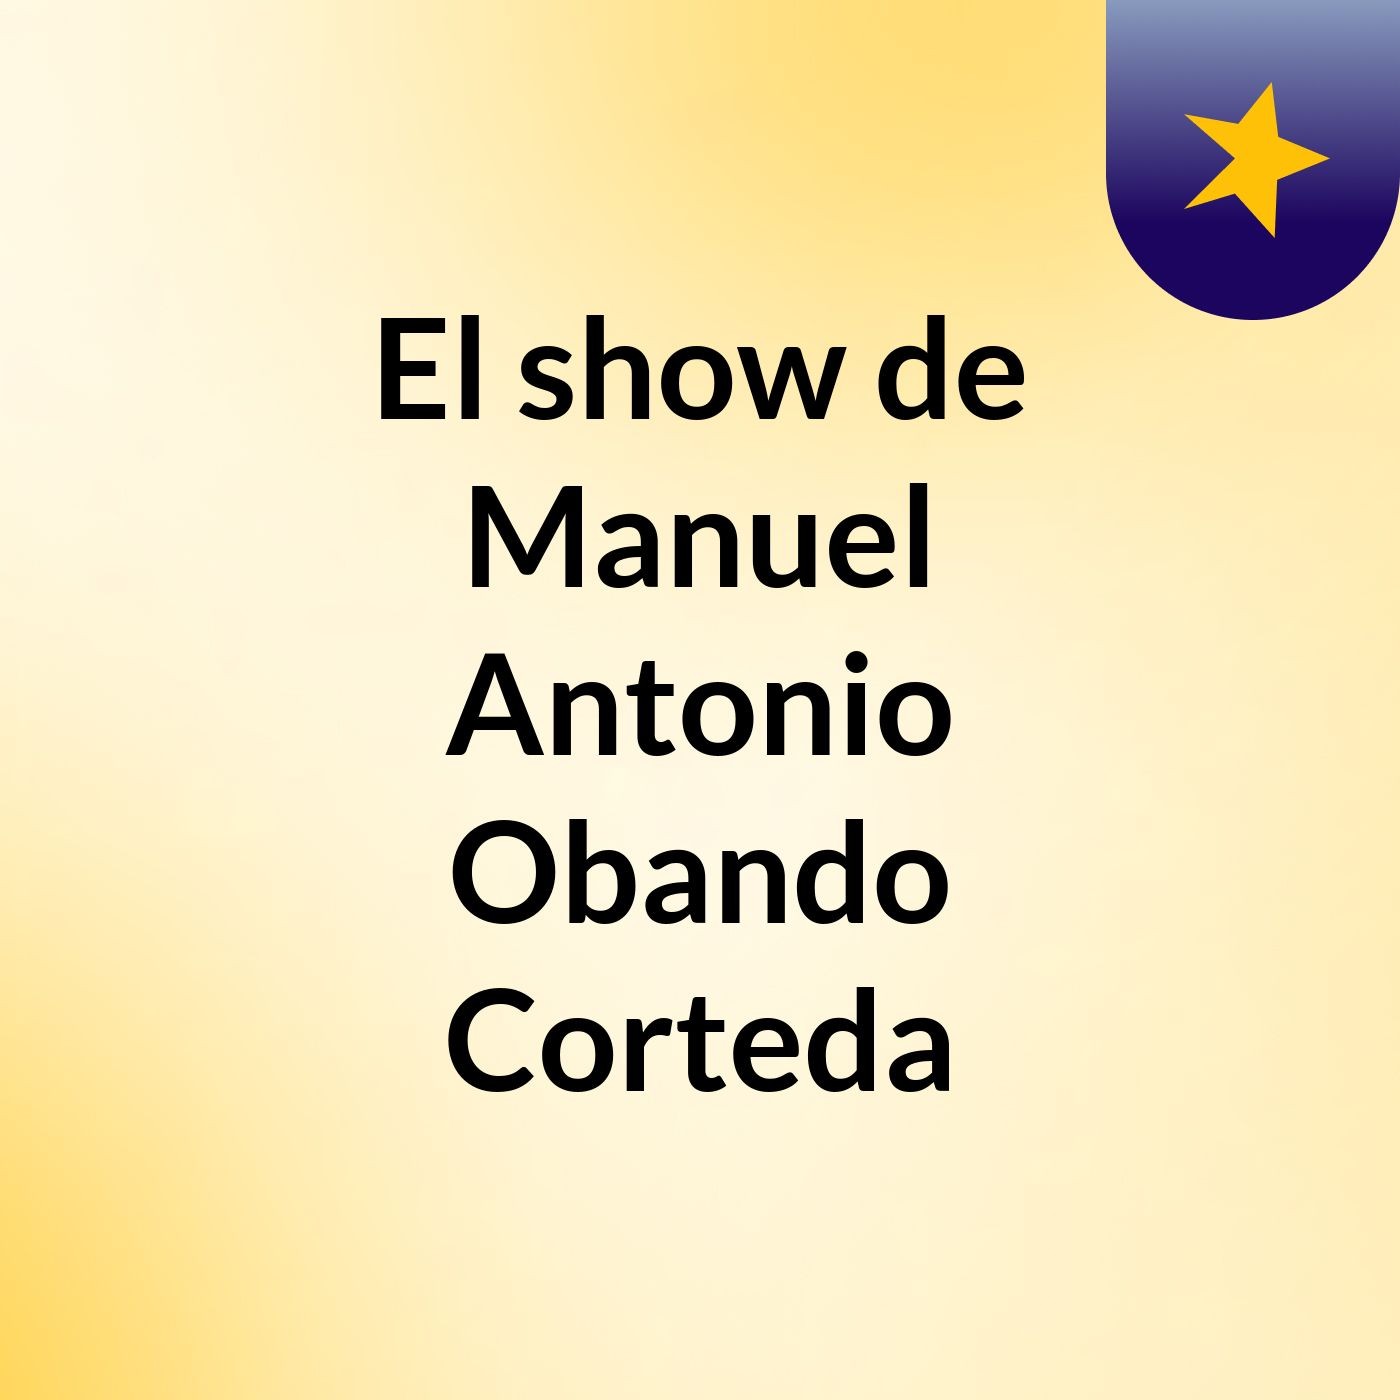 El show de Manuel Antonio Obando Corteda